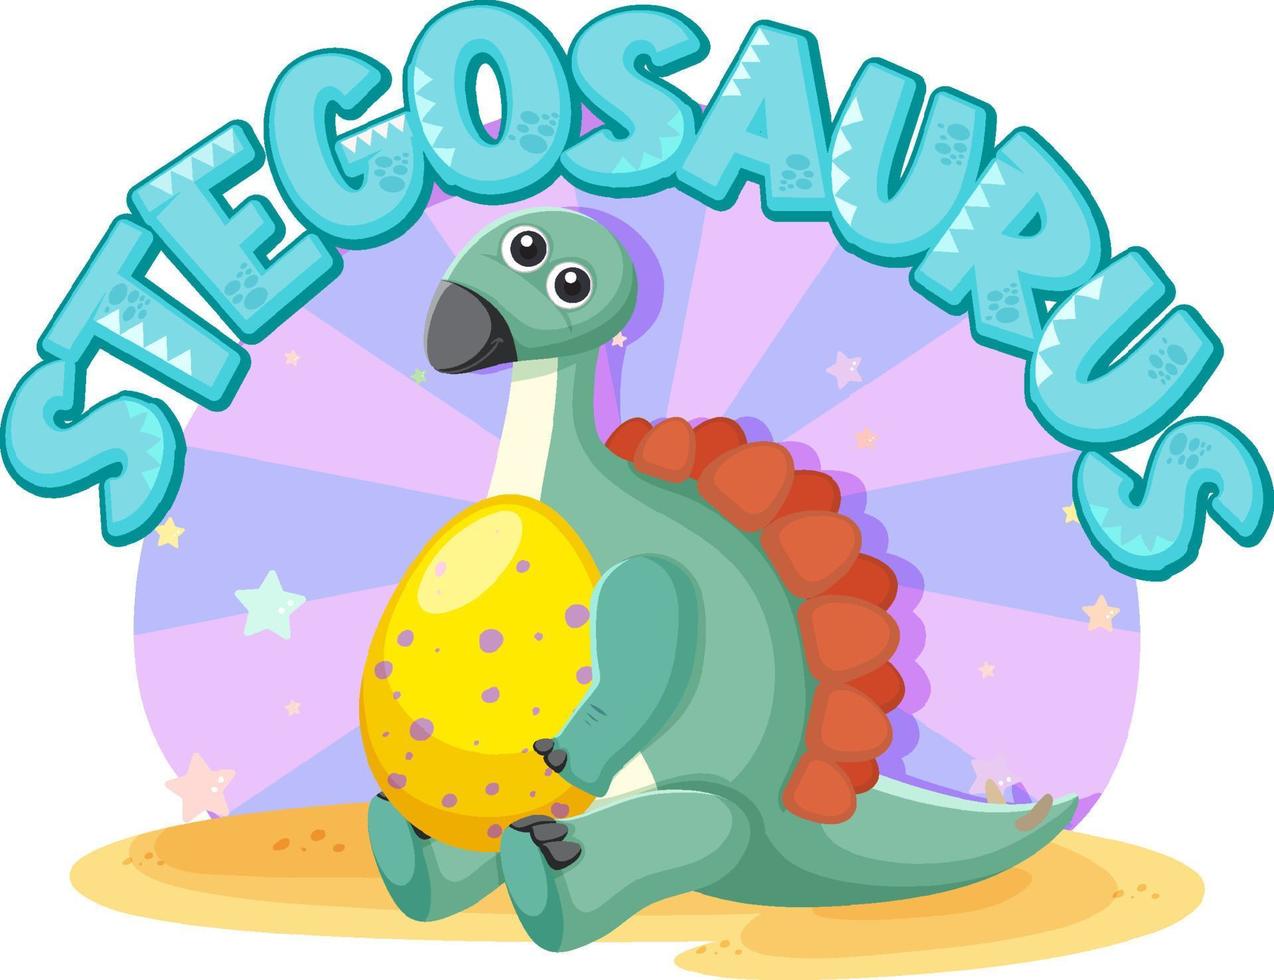 Cute stegosaurus cartoon character vector